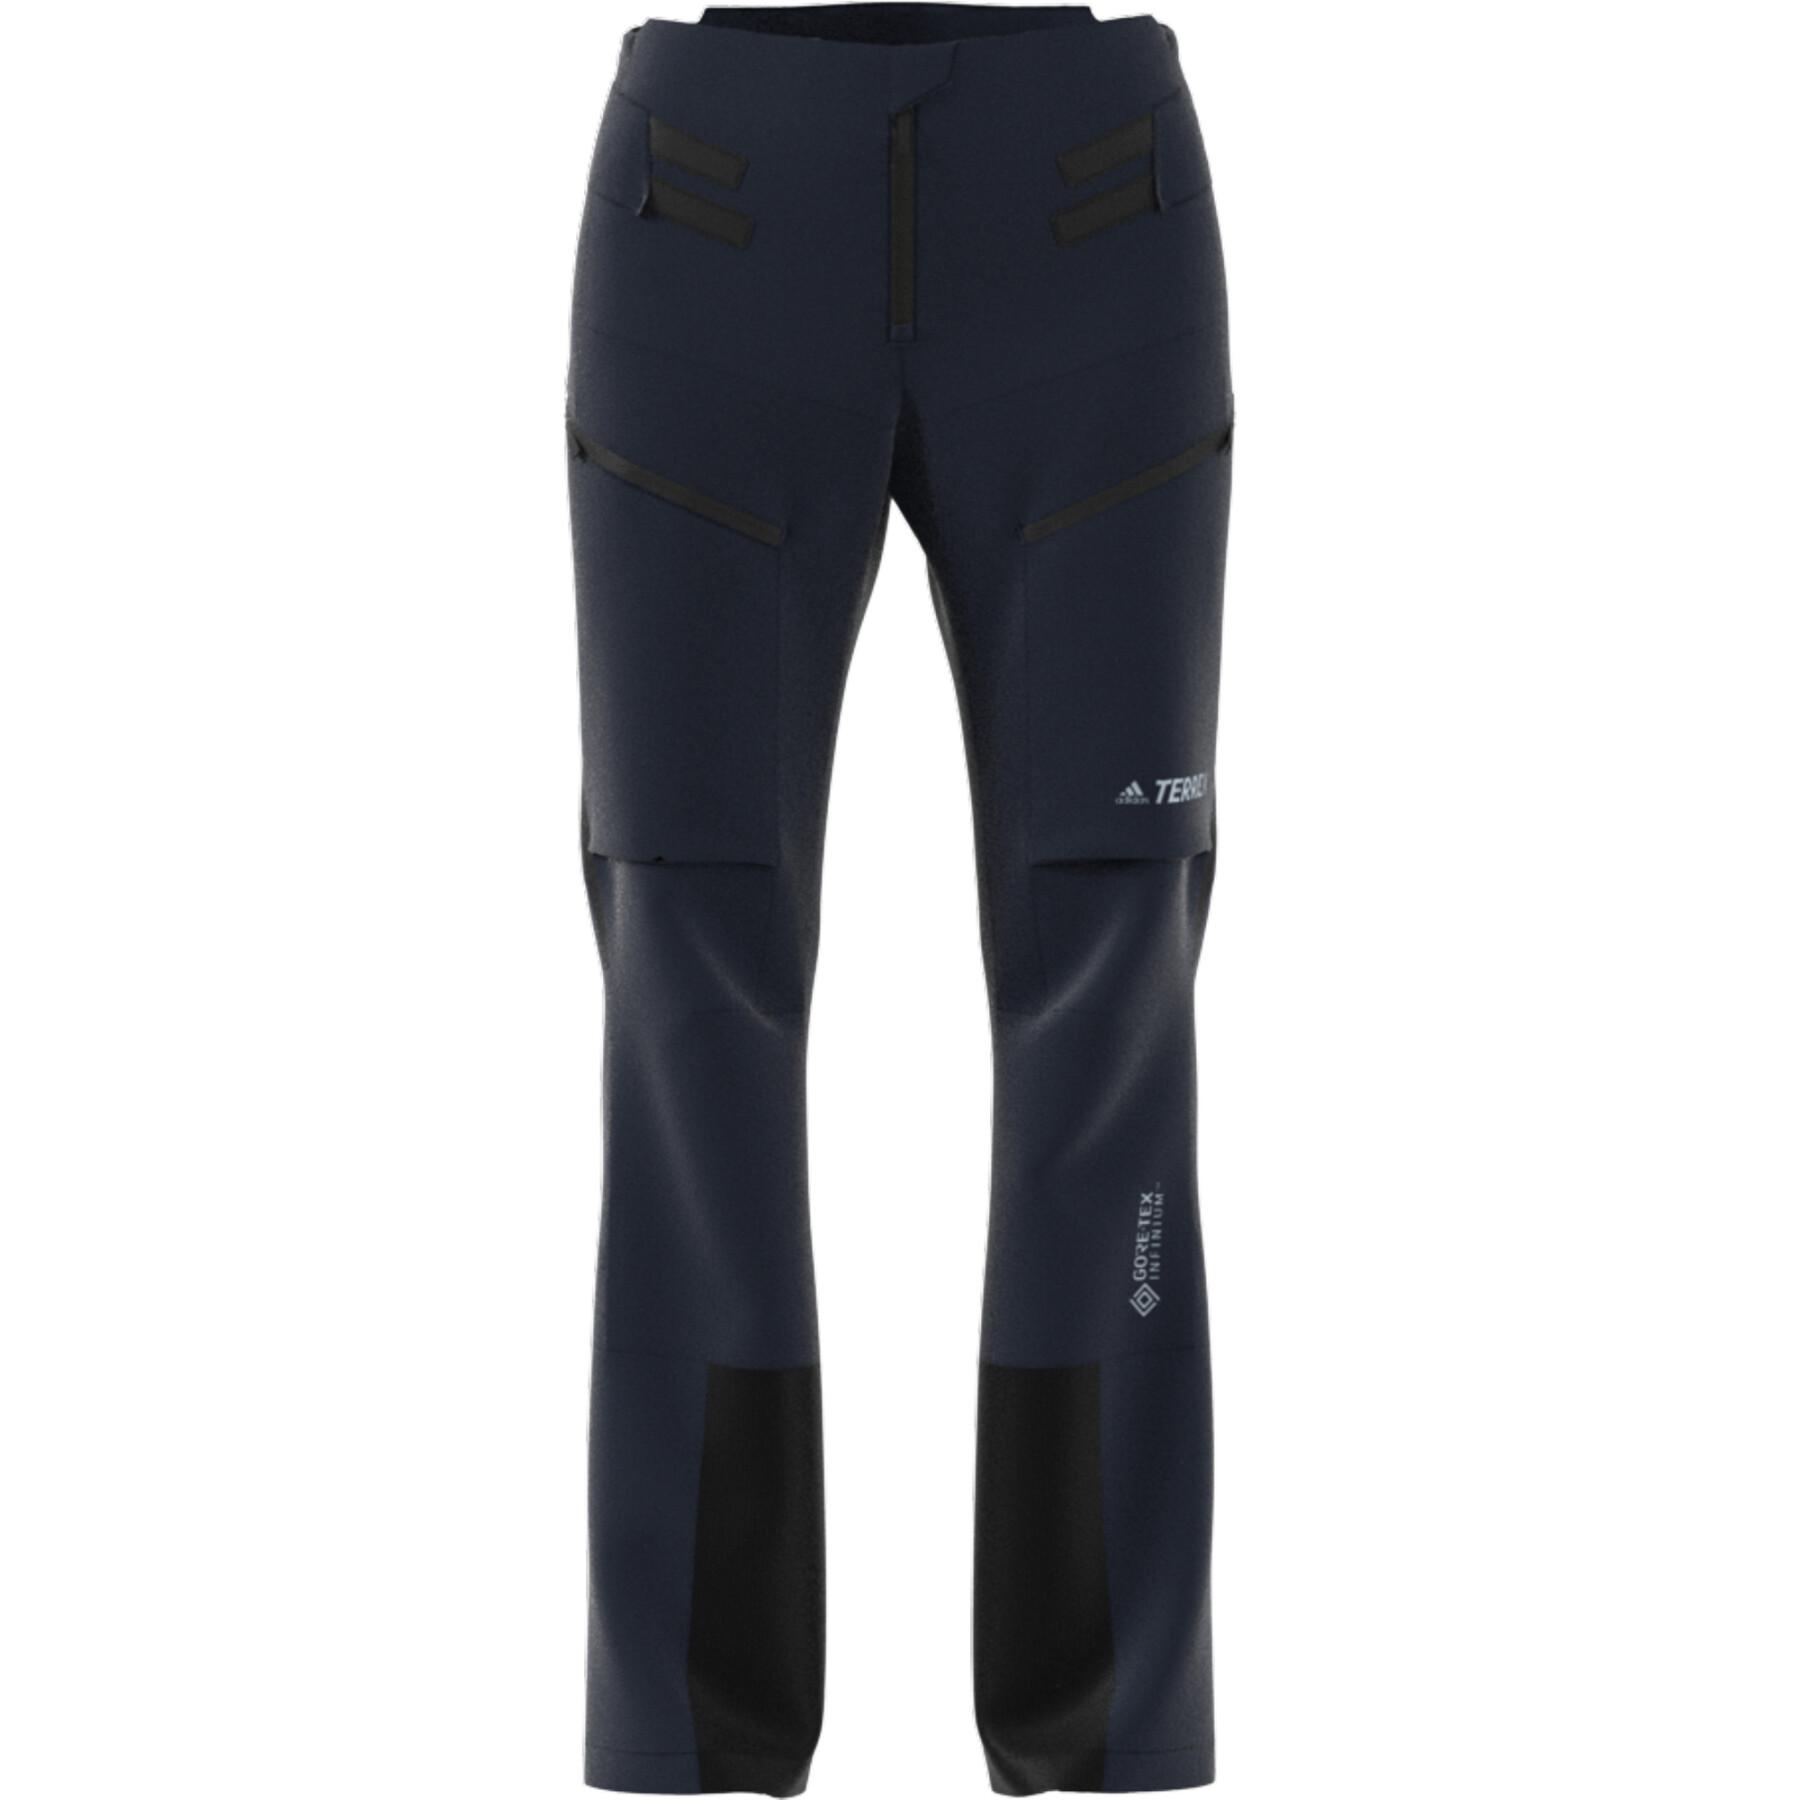 Women's trousers adidas Terrex Skyclimb Tour Gore Ski Touring Soft Shell